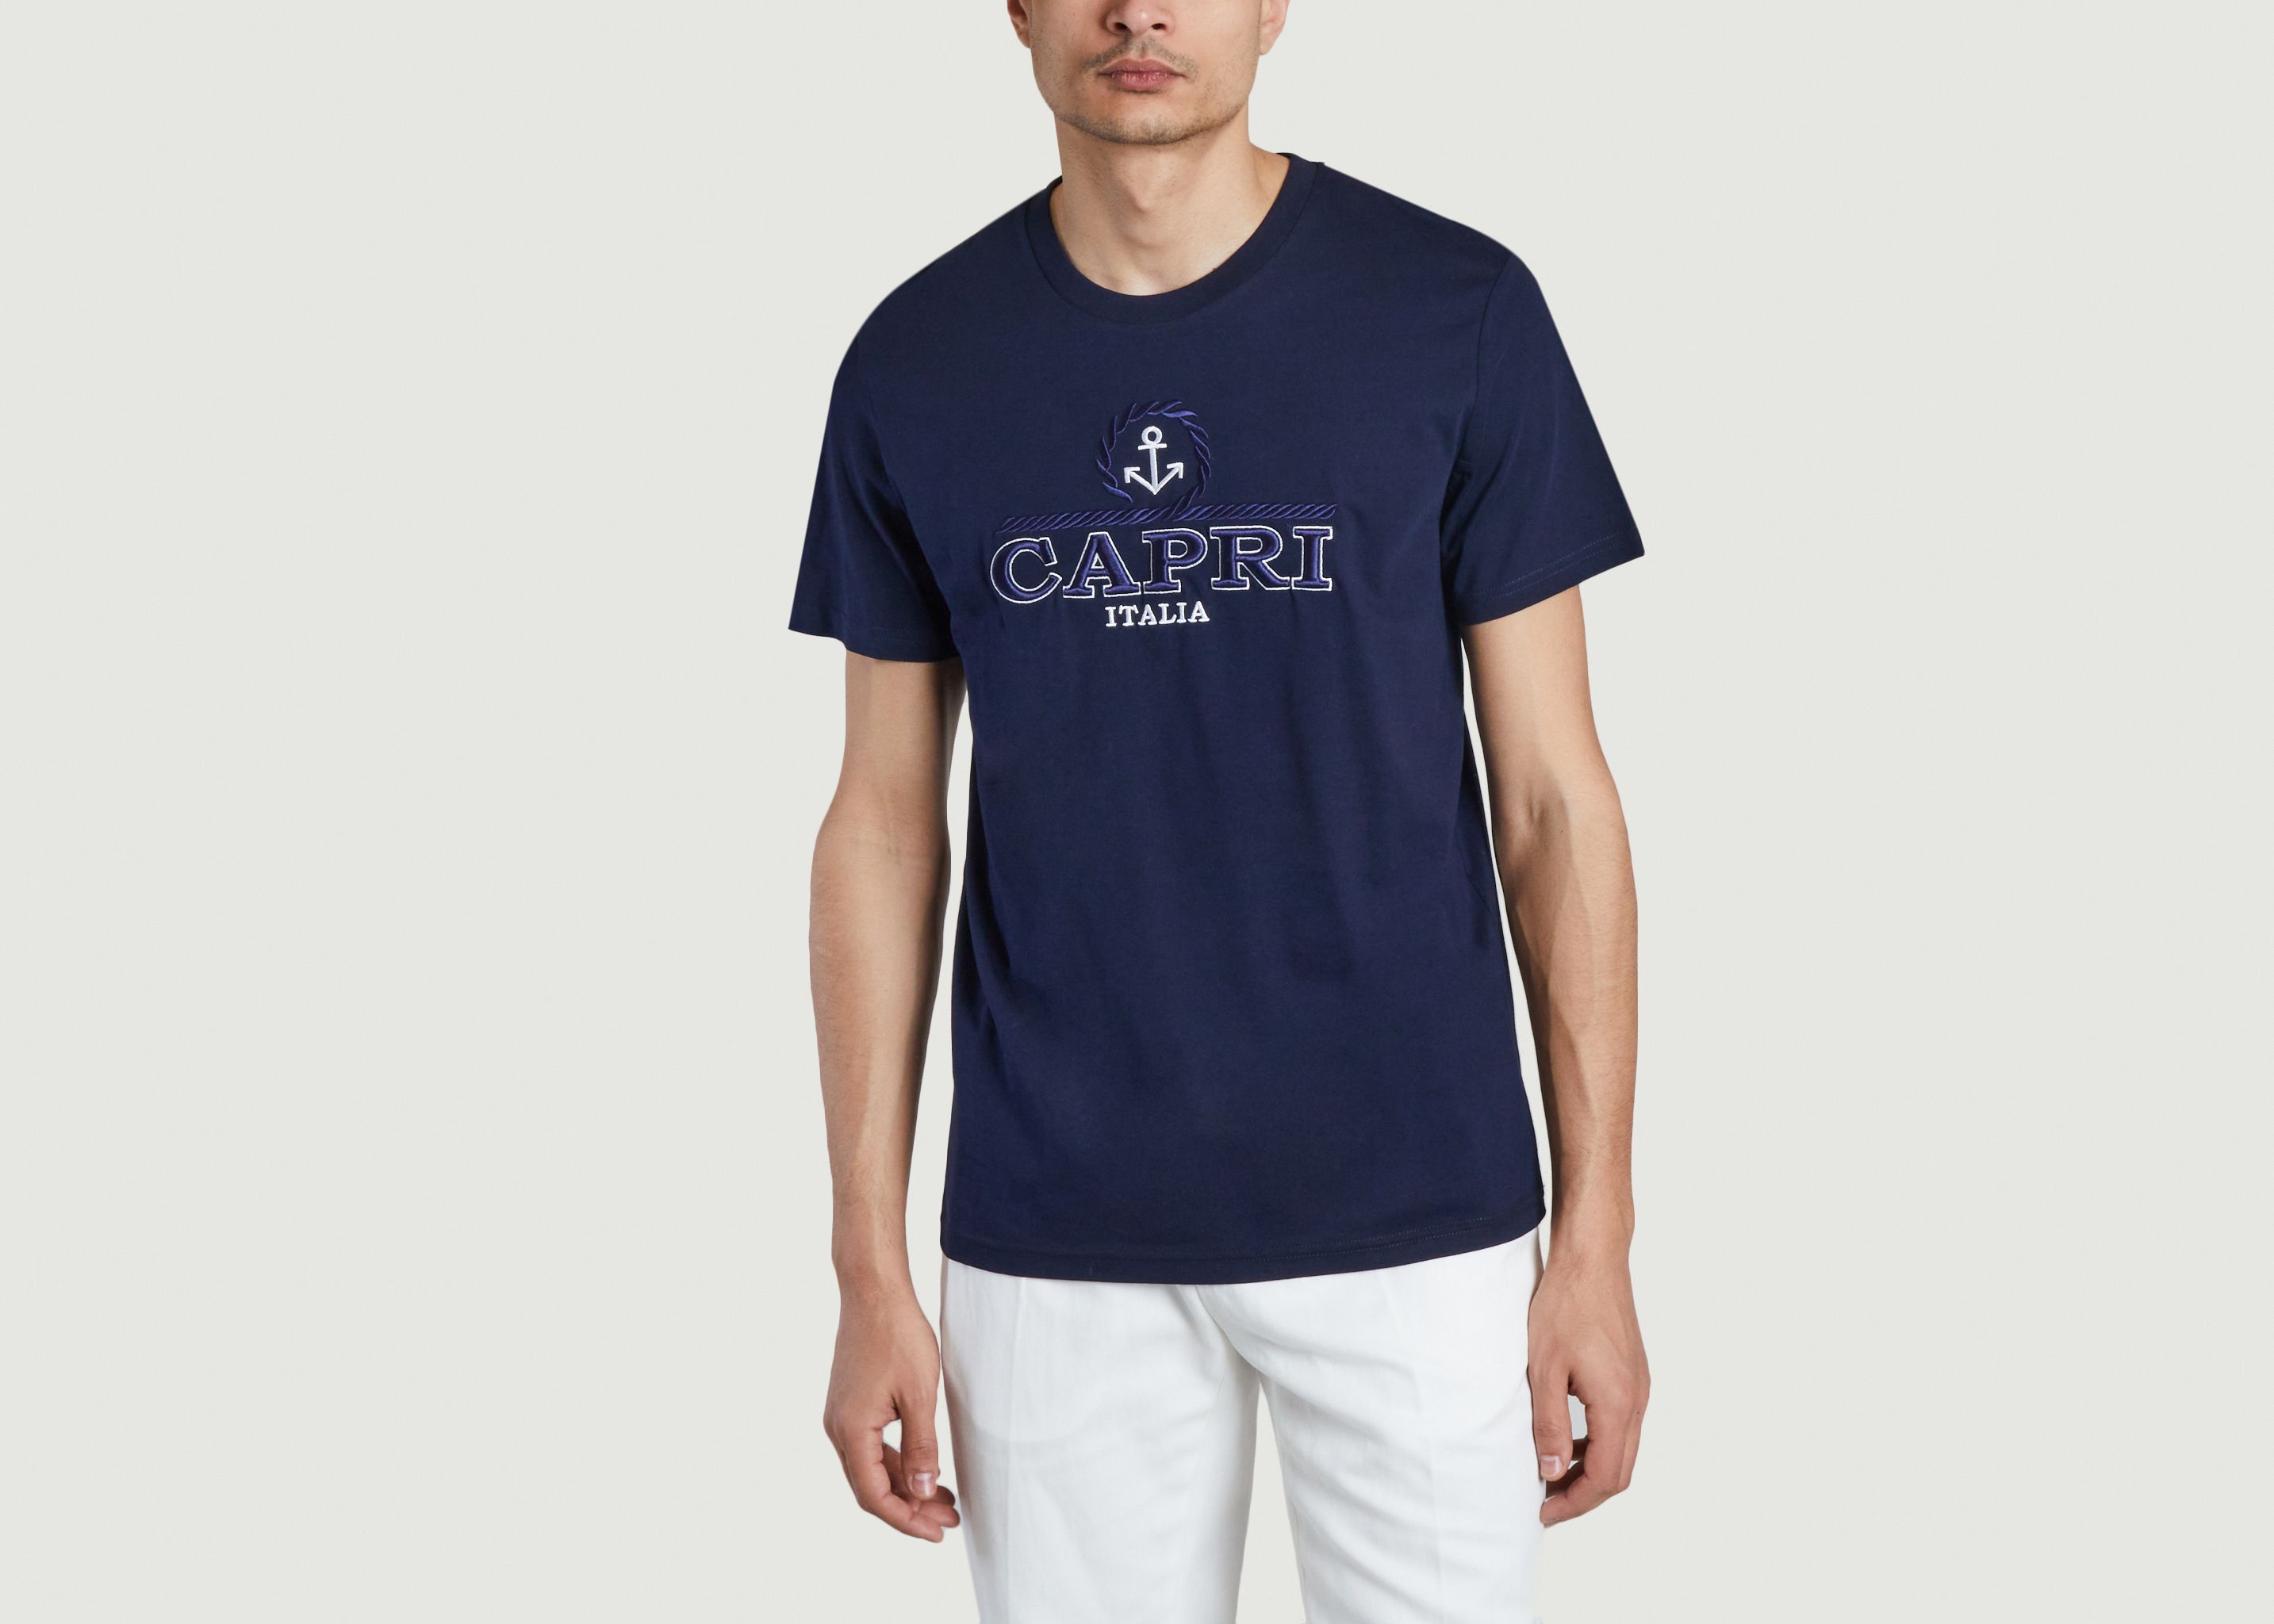 Capri Anchor Tshirt - Harmony